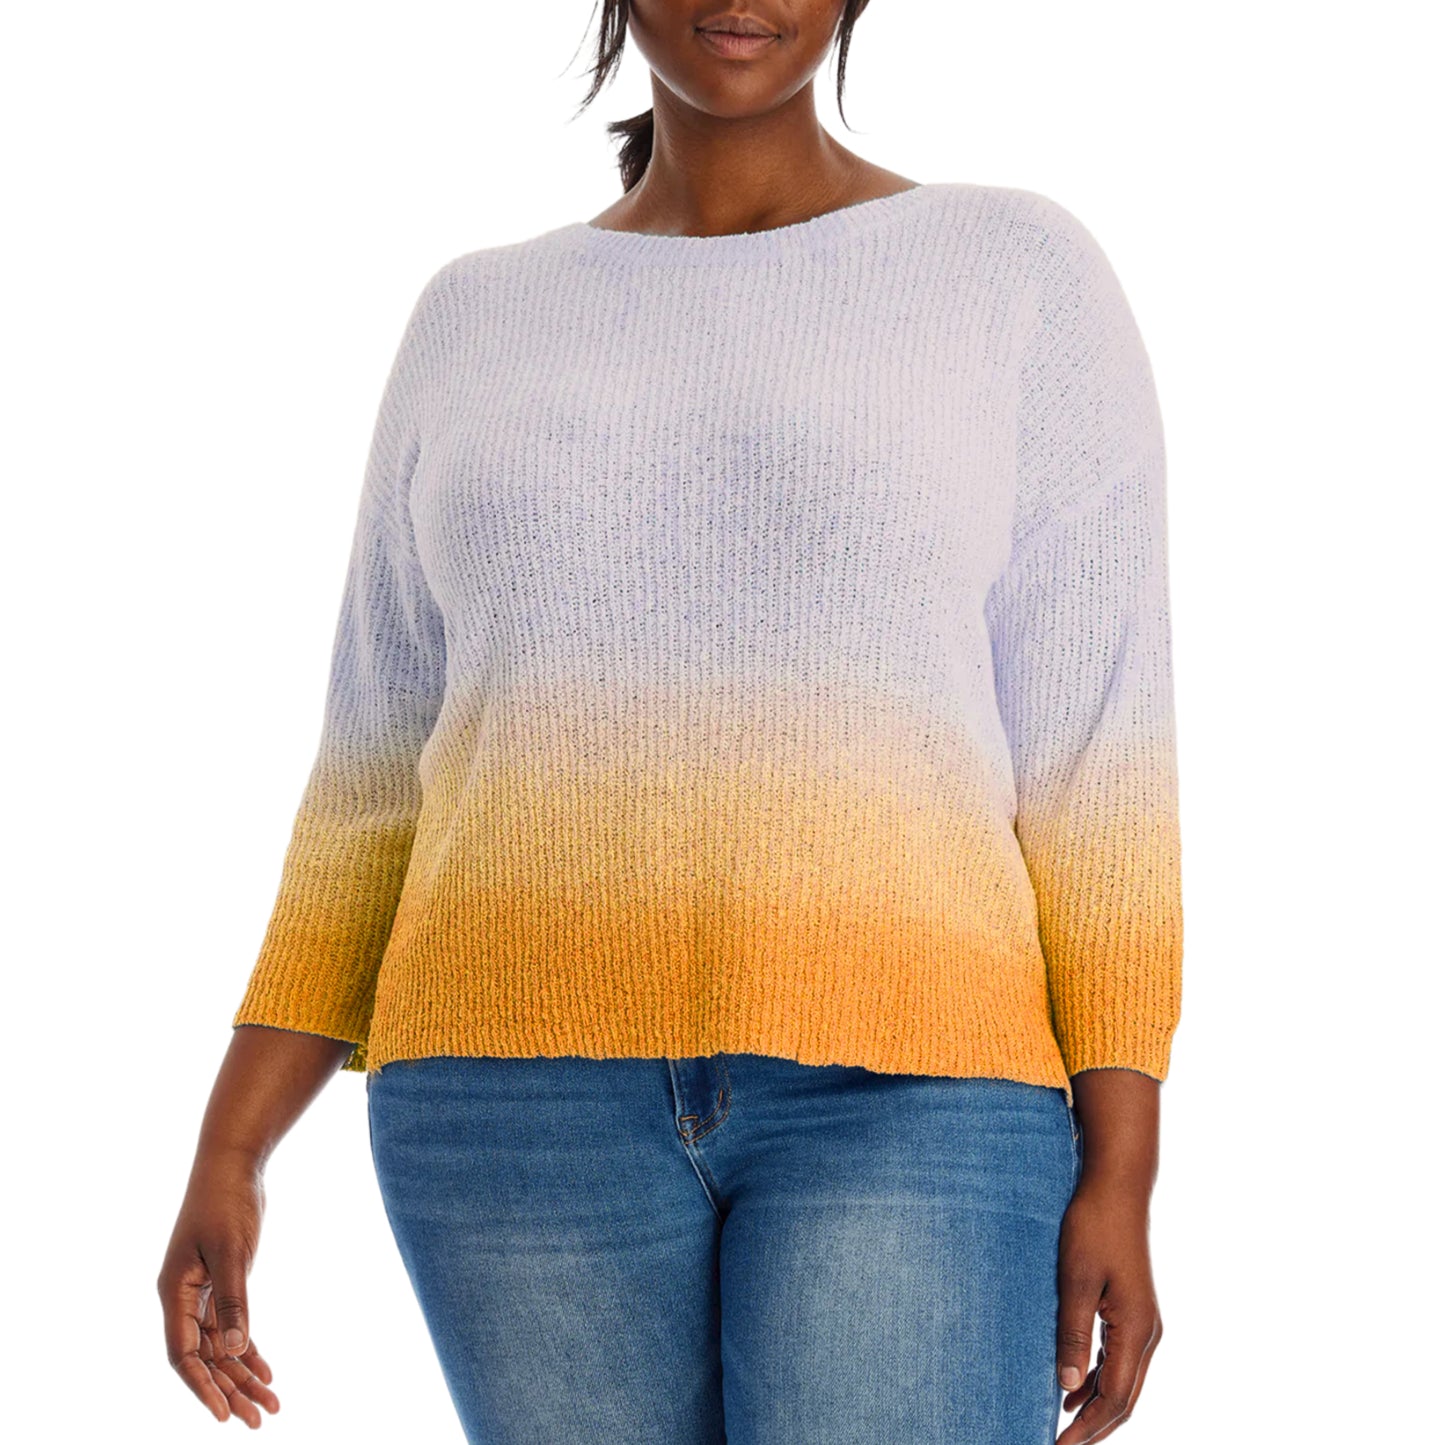 Adyson Parker Women's Plus 3/4 Sleeve Ombre Dip Dye Soft Cotton Blend Knit Sweater